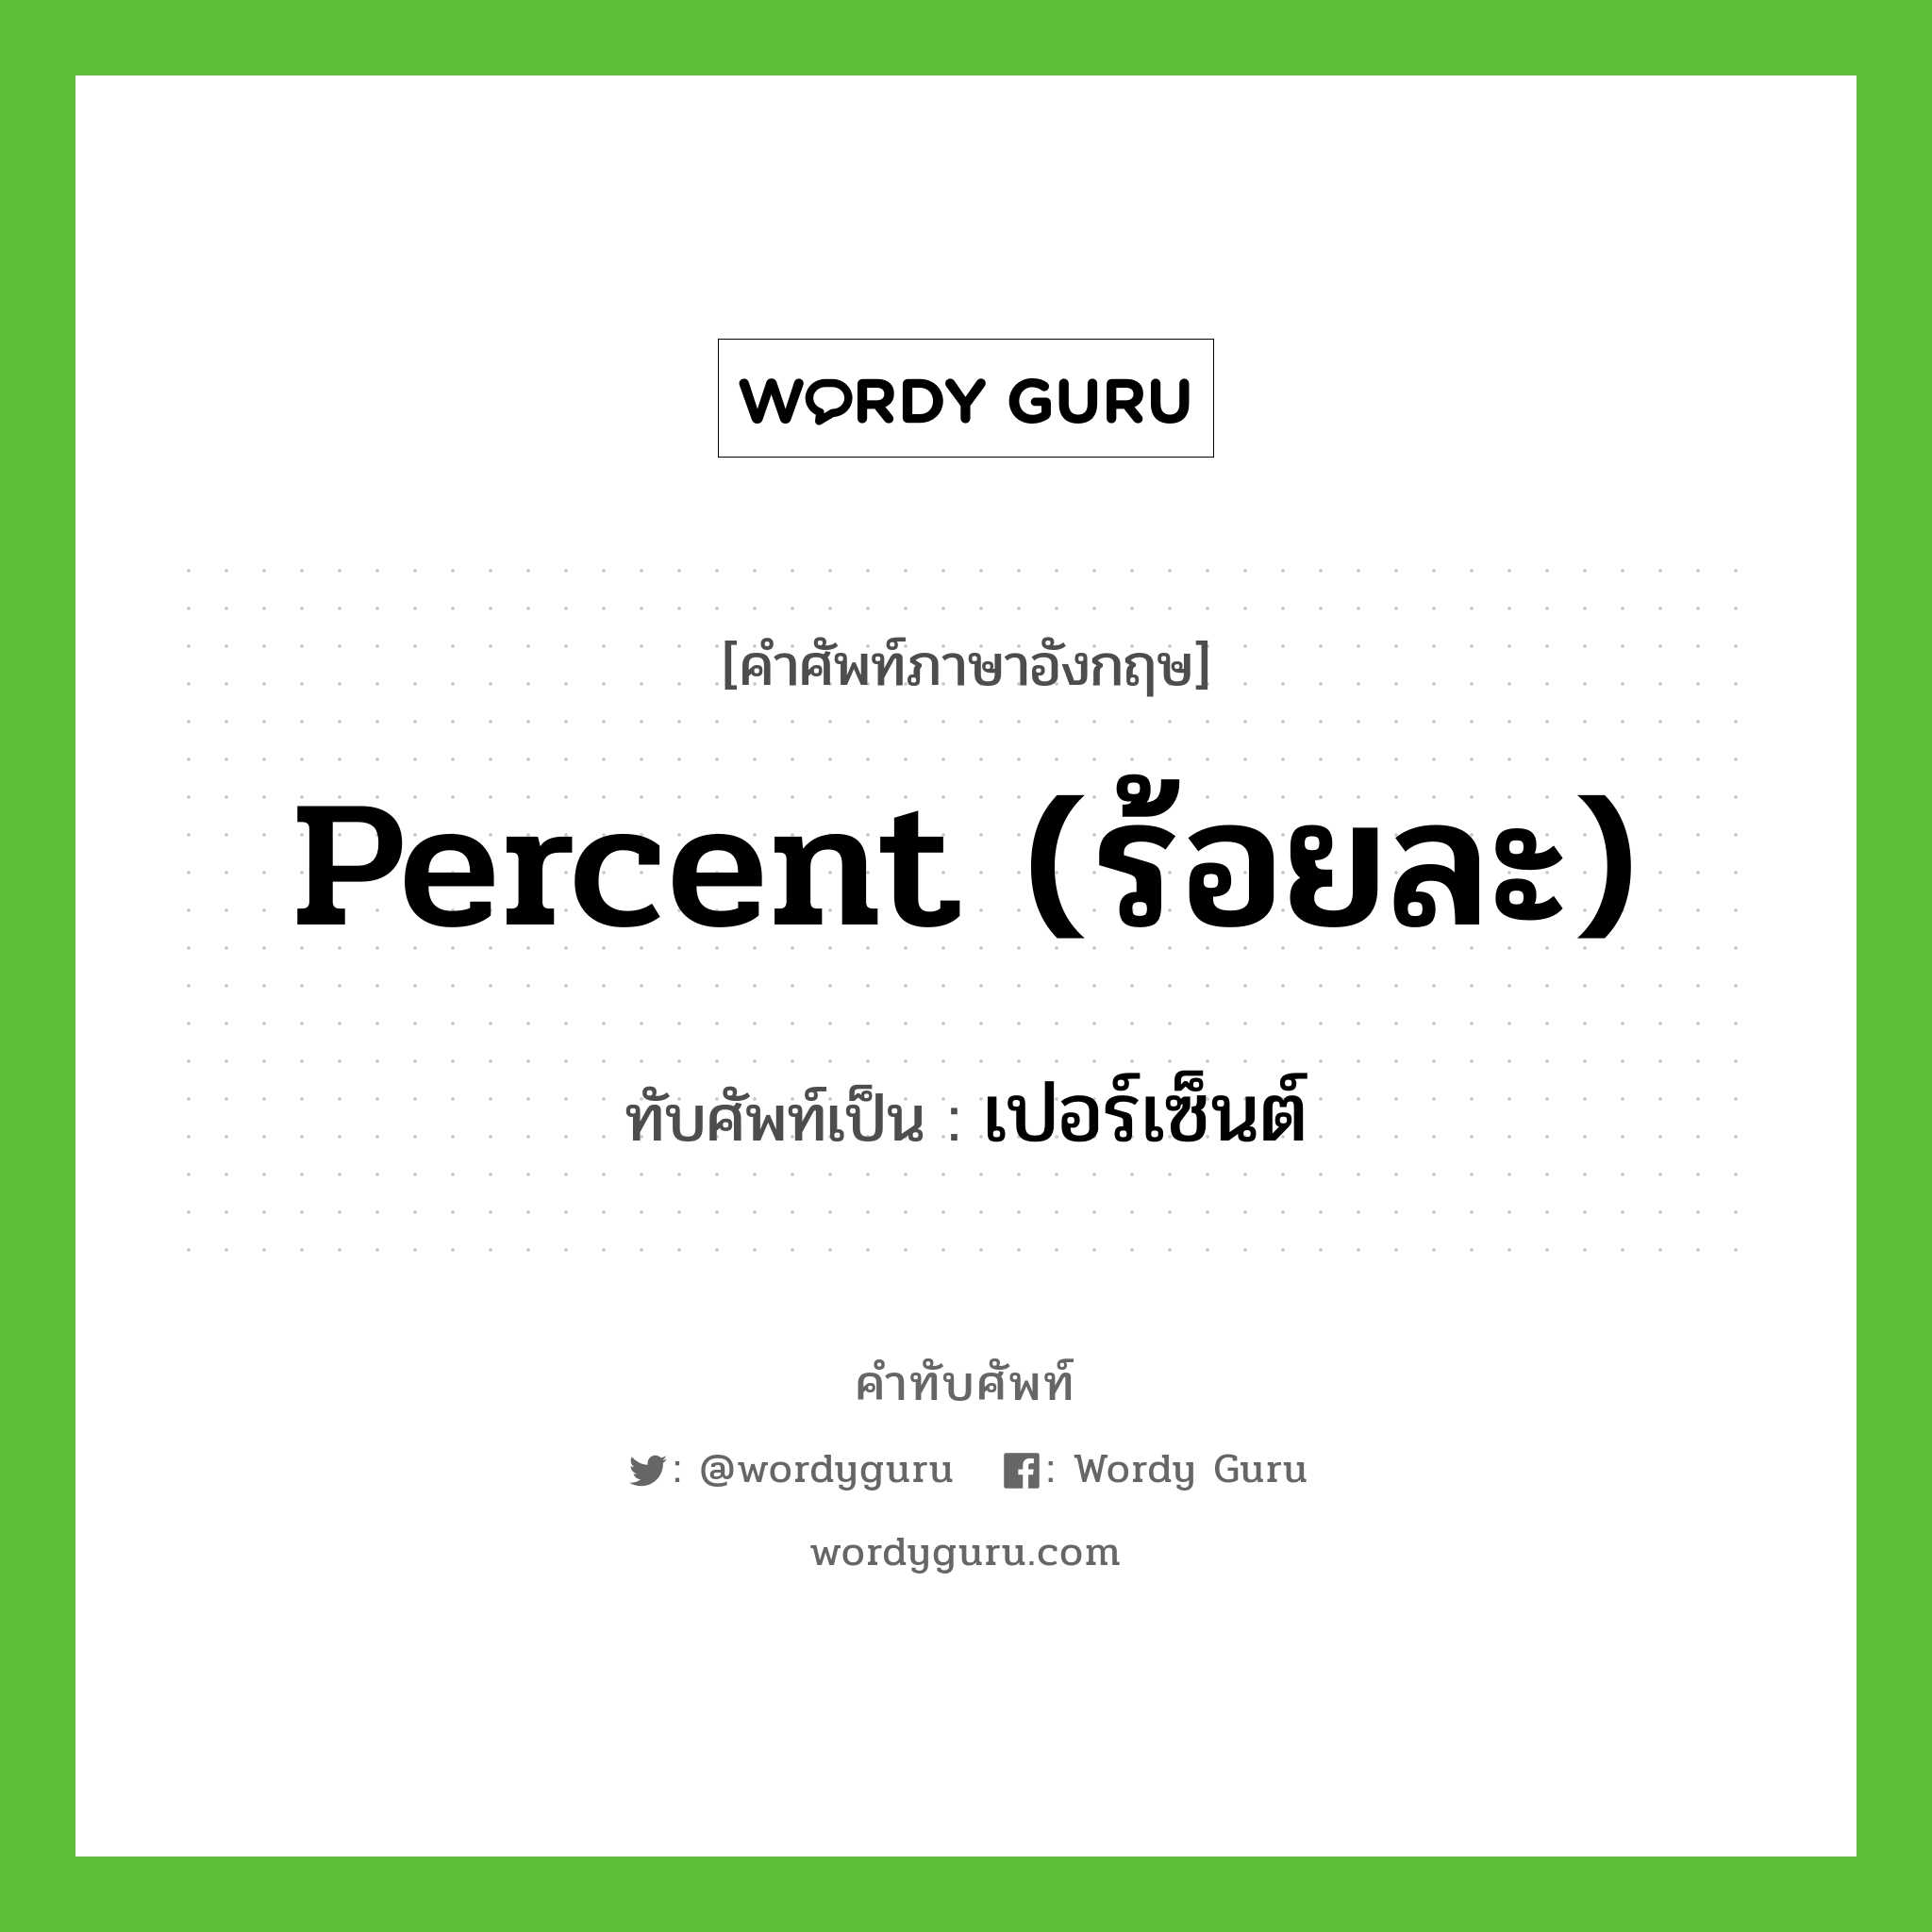 เปอร์เซ็นต์ เขียนอย่างไร?, คำศัพท์ภาษาอังกฤษ เปอร์เซ็นต์ ทับศัพท์เป็น percent (ร้อยละ)